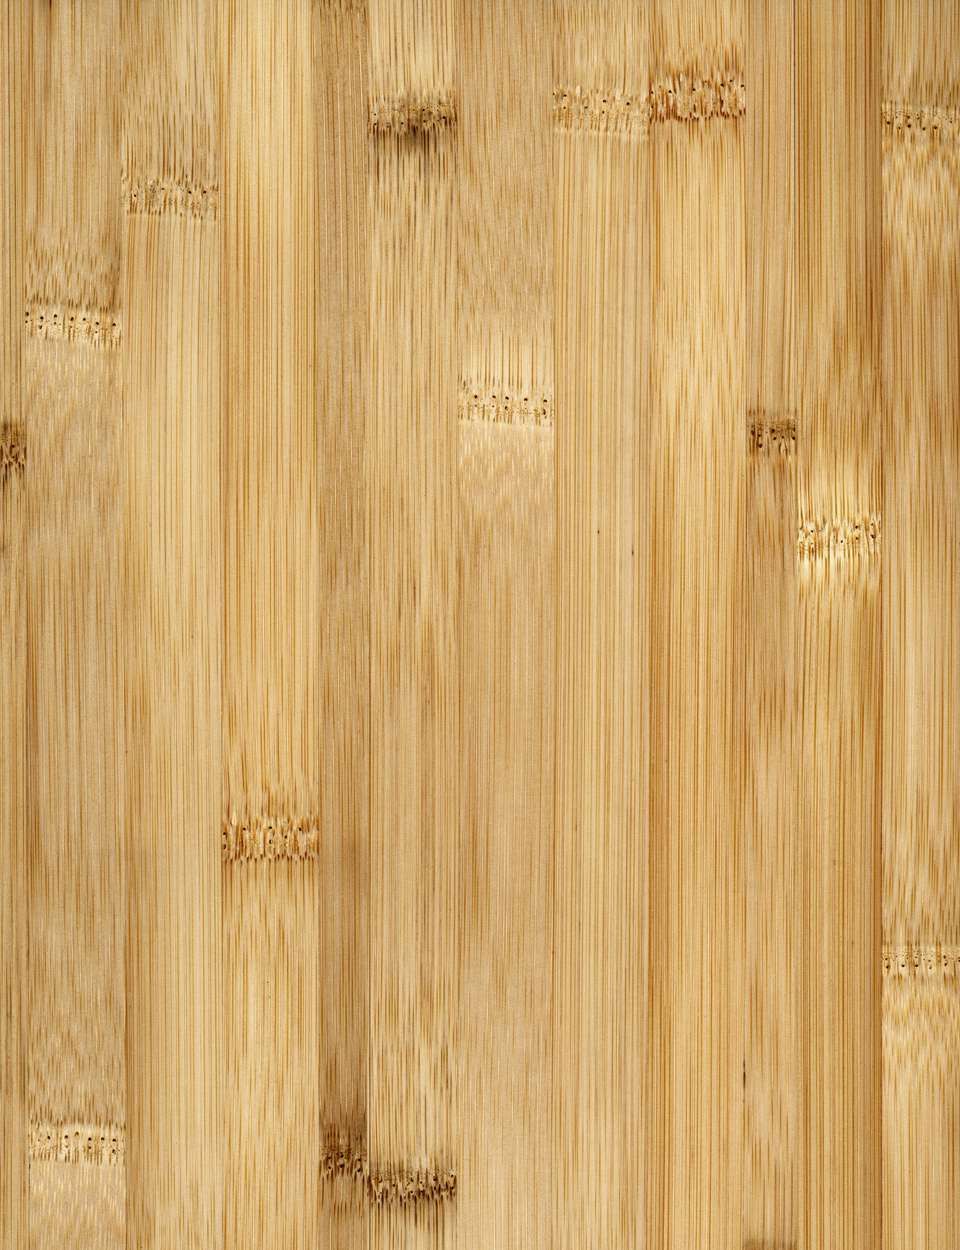 How to get the best hardwood floor
  nailer?